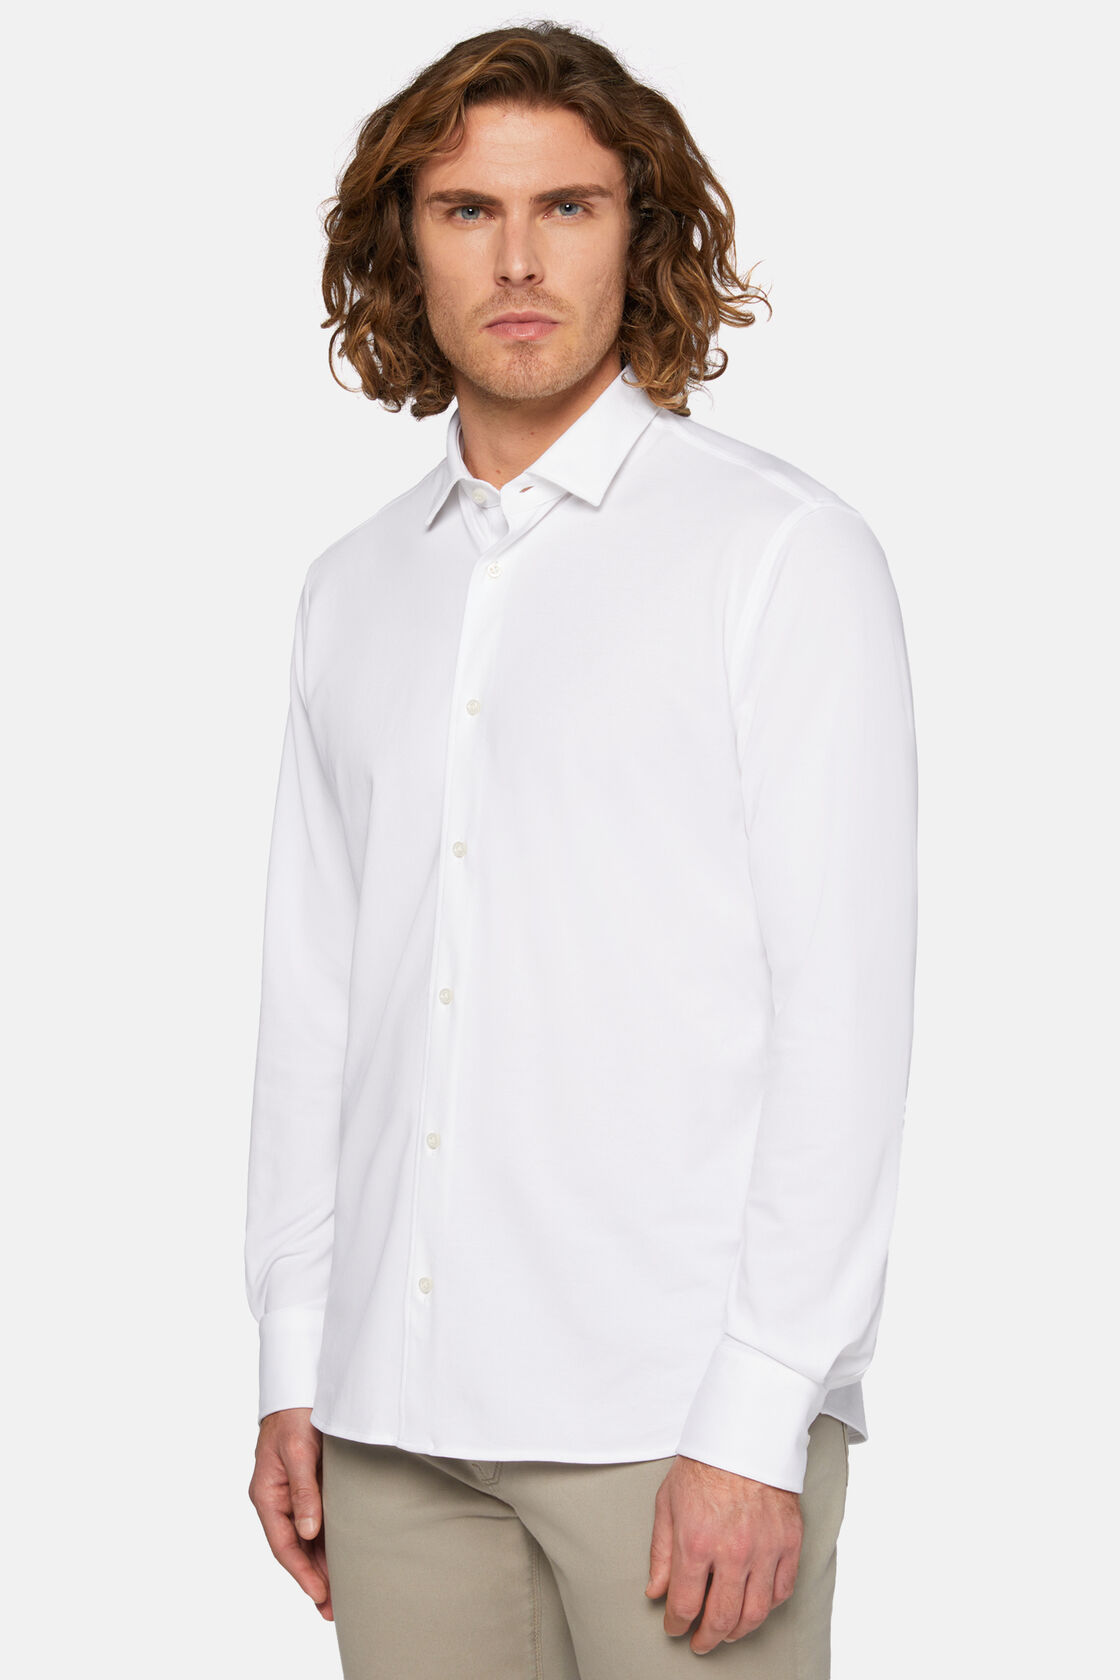 Μπλουζάκι πόλο πικέ με κανονική εφαρμογή, White, hi-res